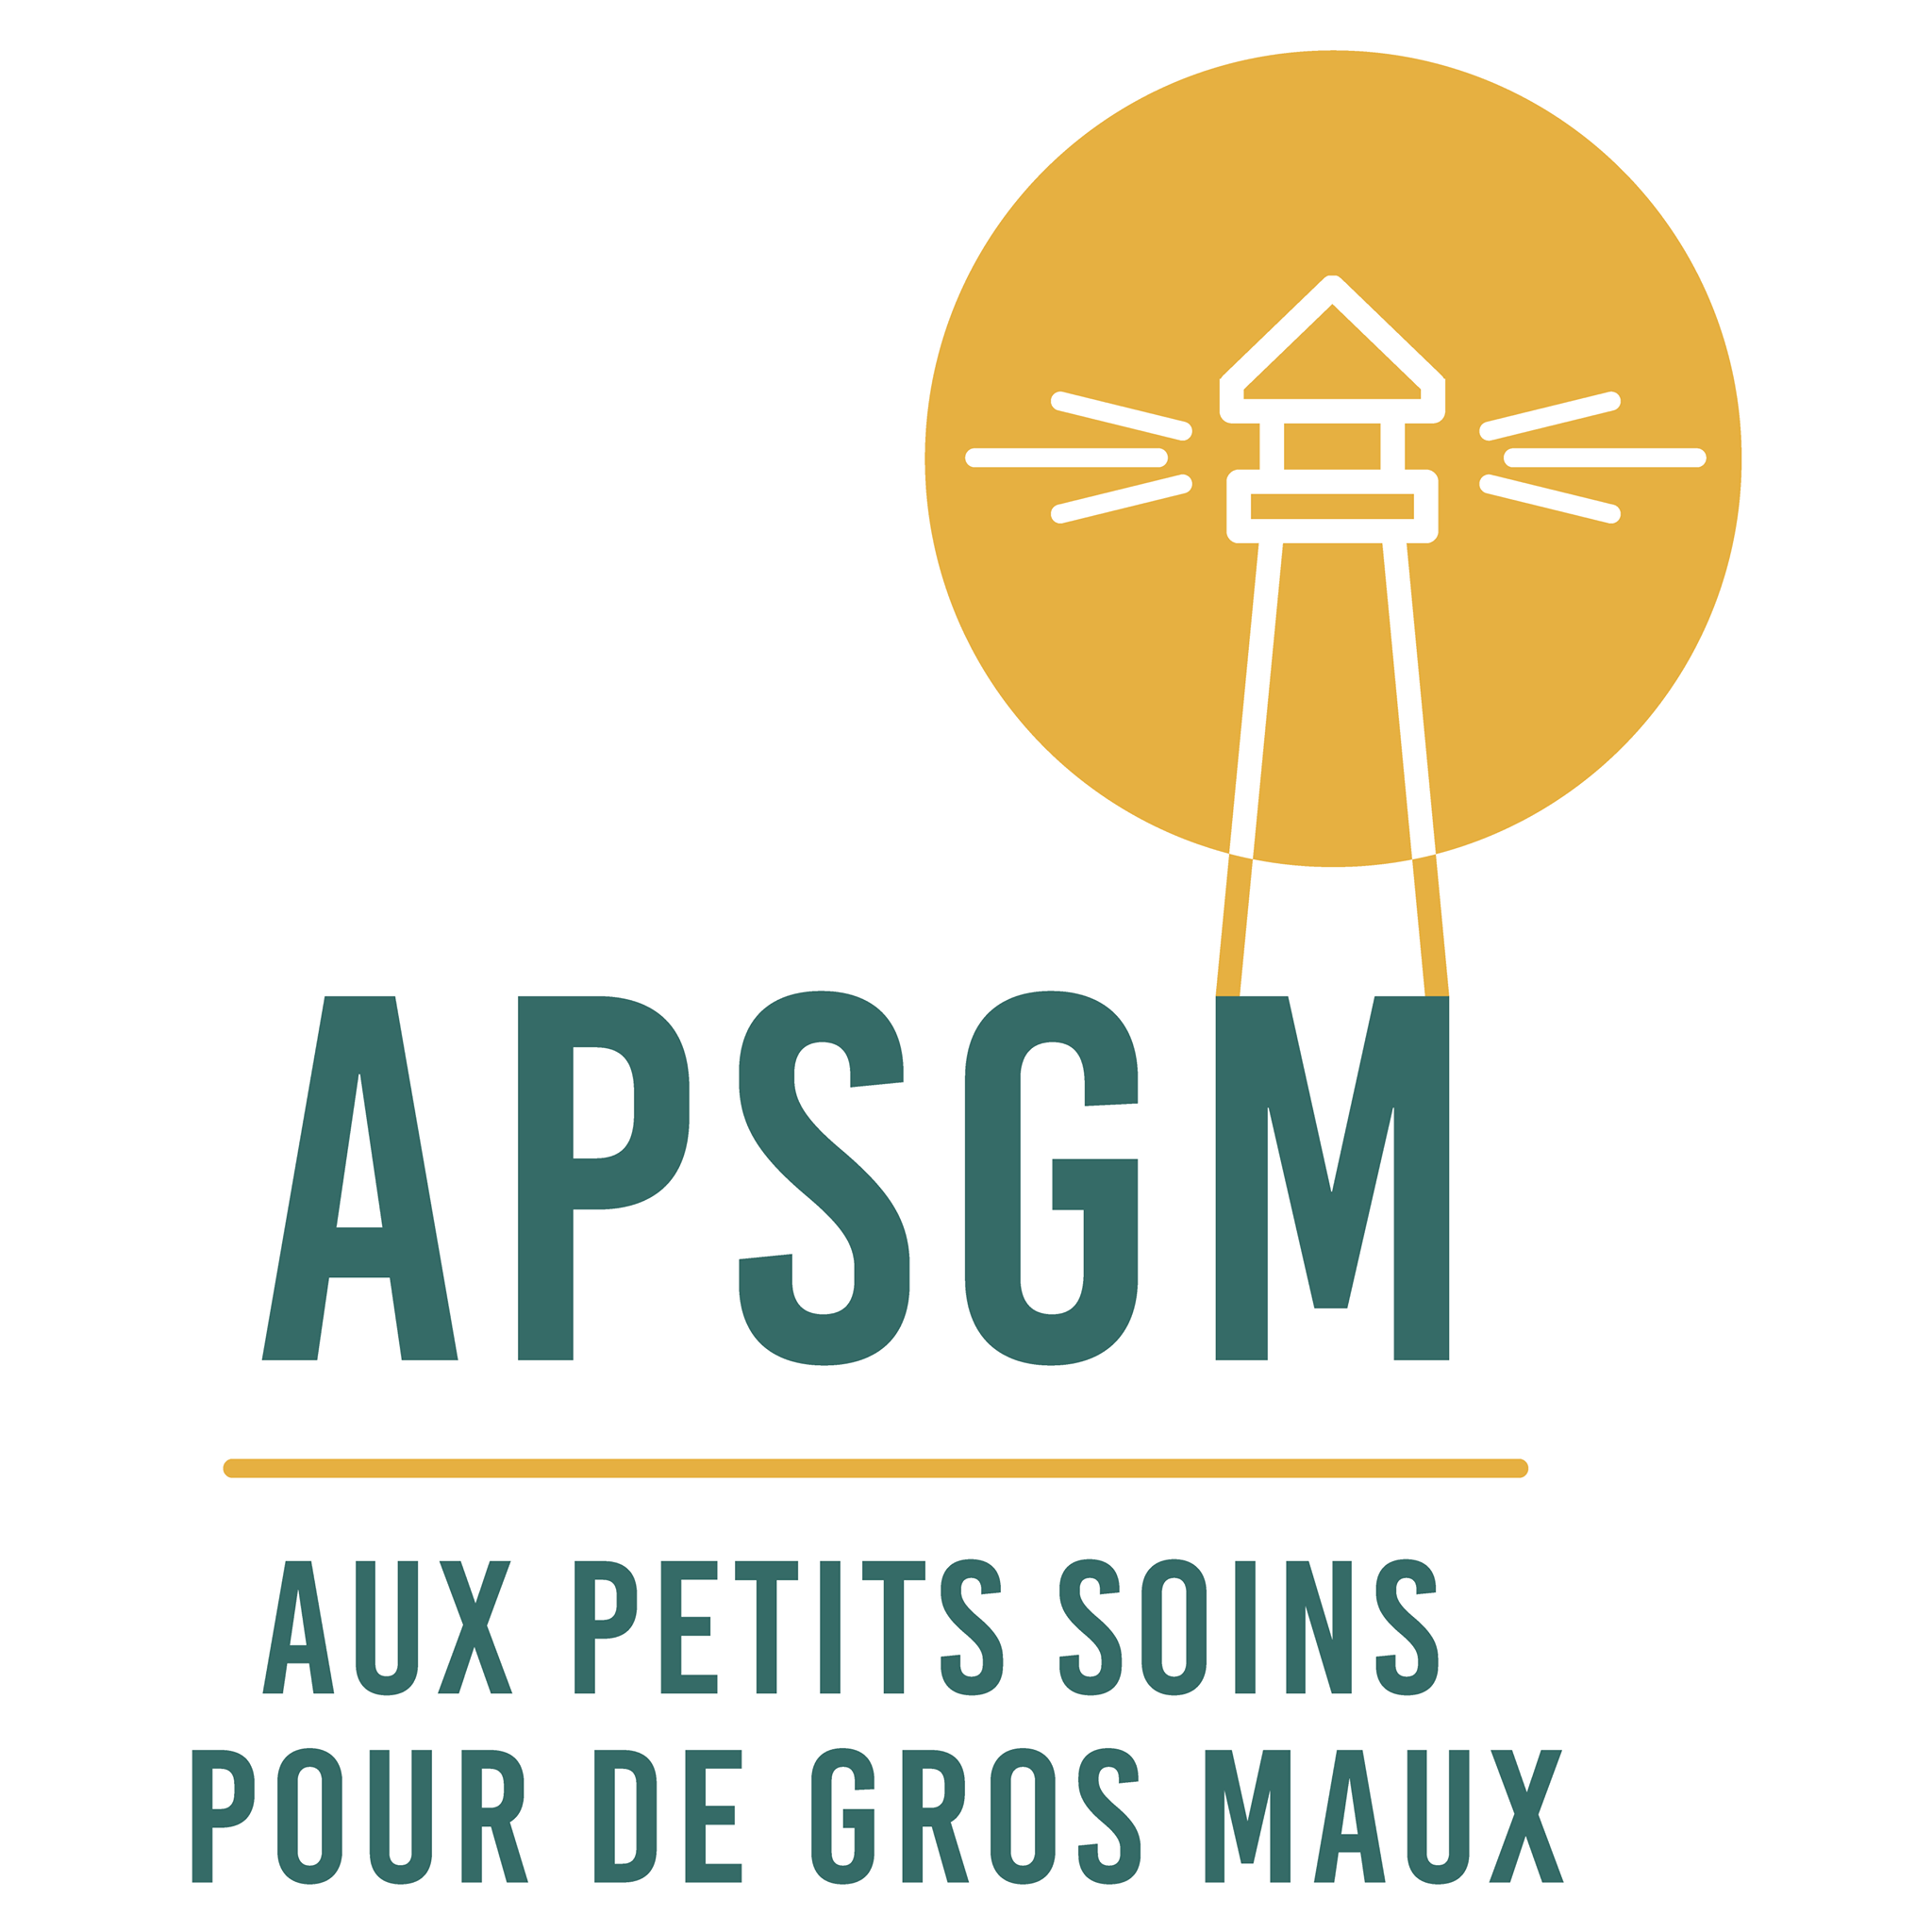 logo APSPGM - Aux Petits Soins pour de gros maux